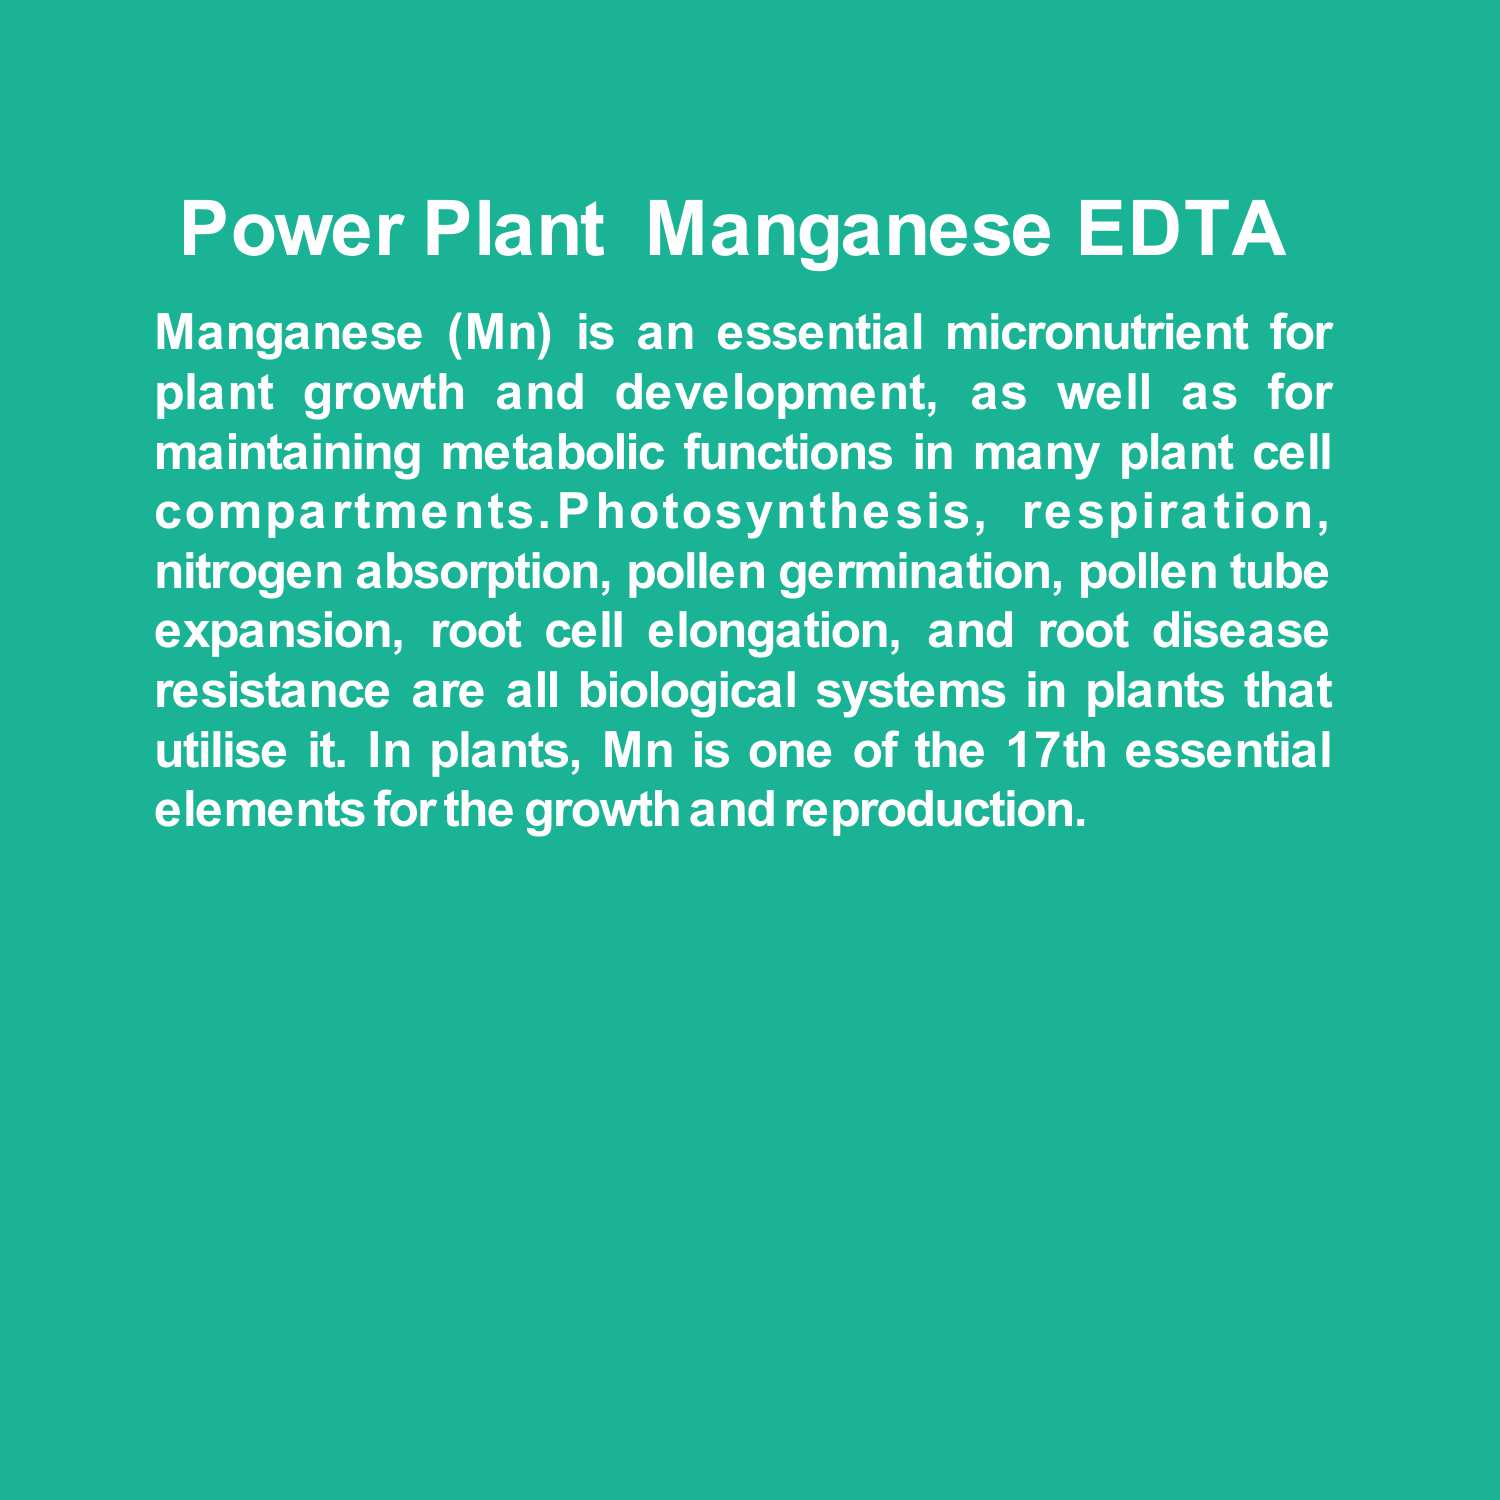 Manganese EDTA